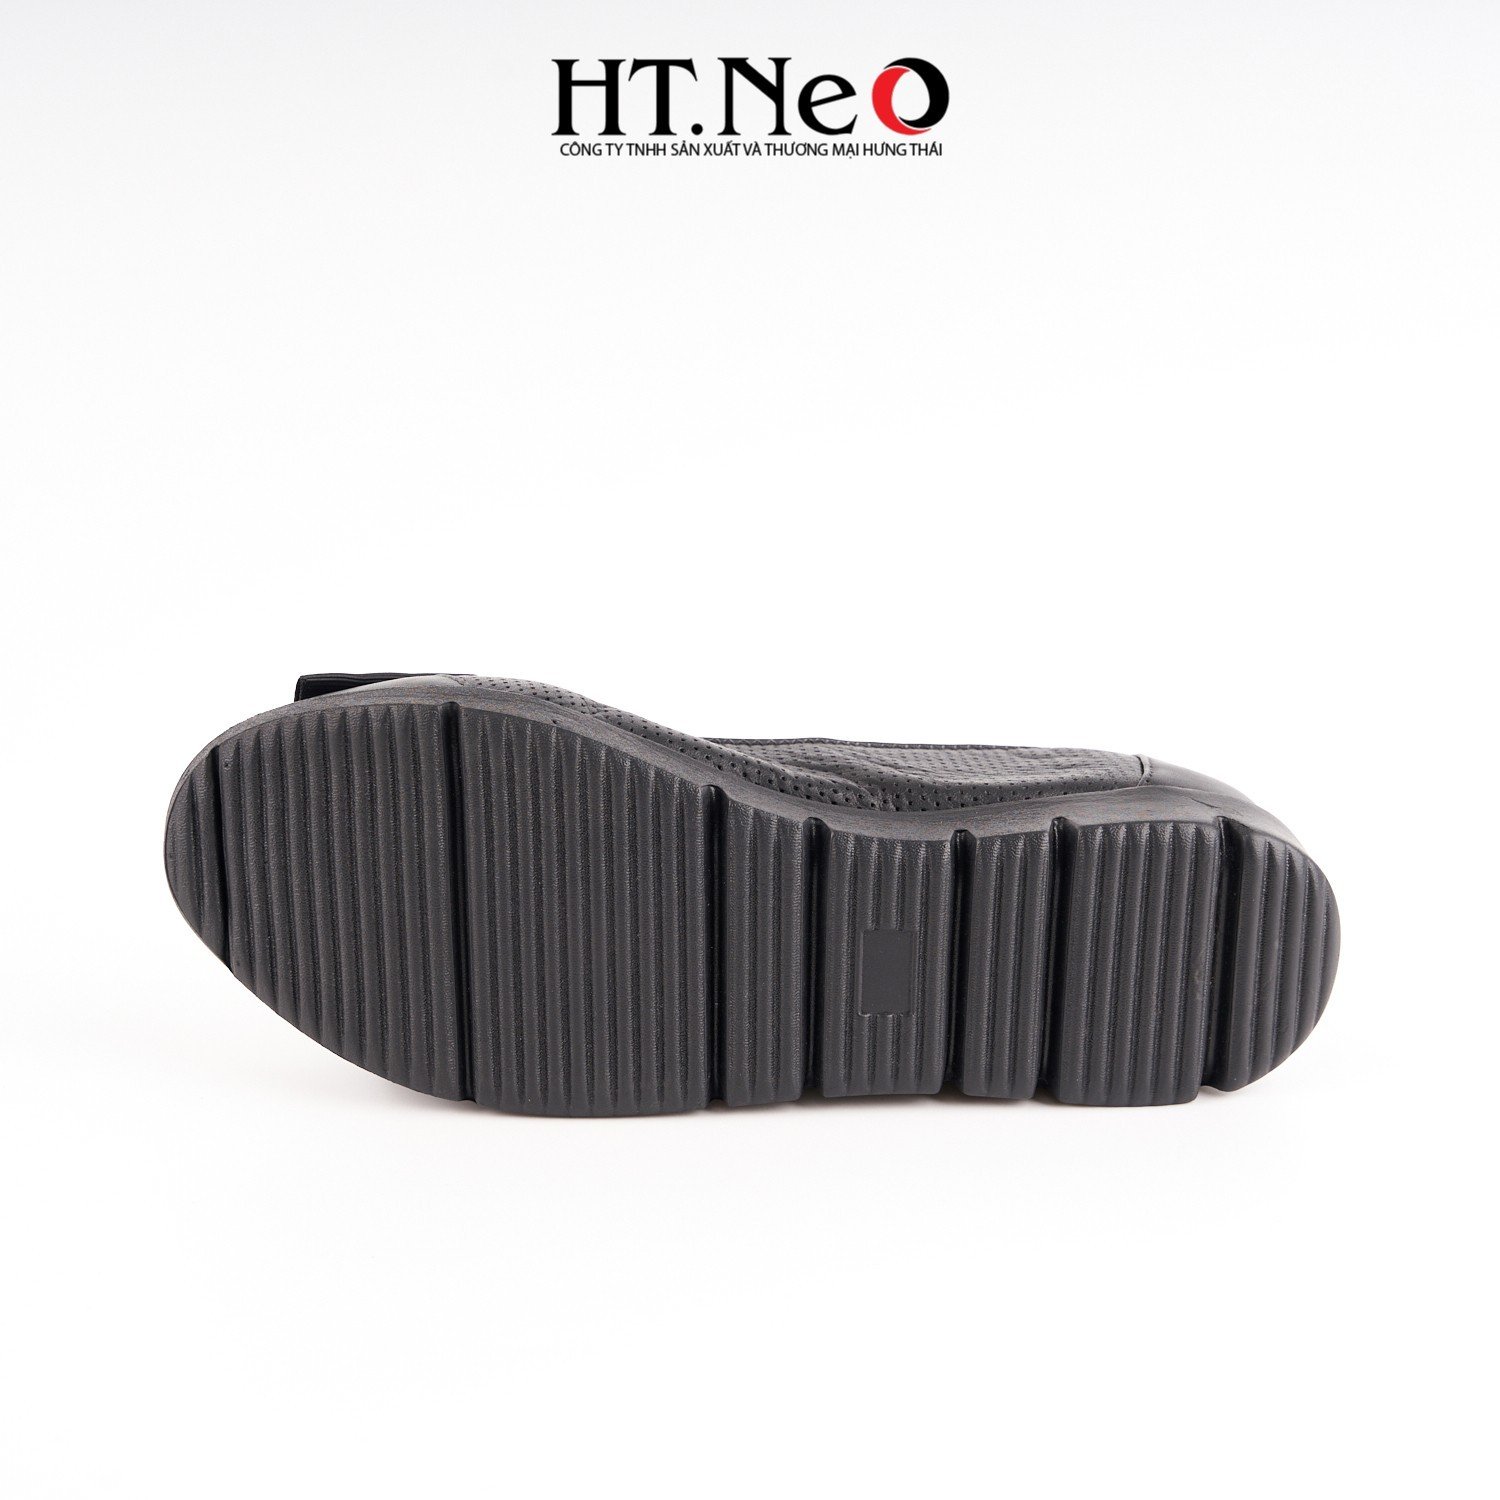 Giày bệt nữ được thiết kế đơn giản với kiểu dáng đơn giản, trẻ trung, khuy tròn, chất liệu da đế cao su NU119